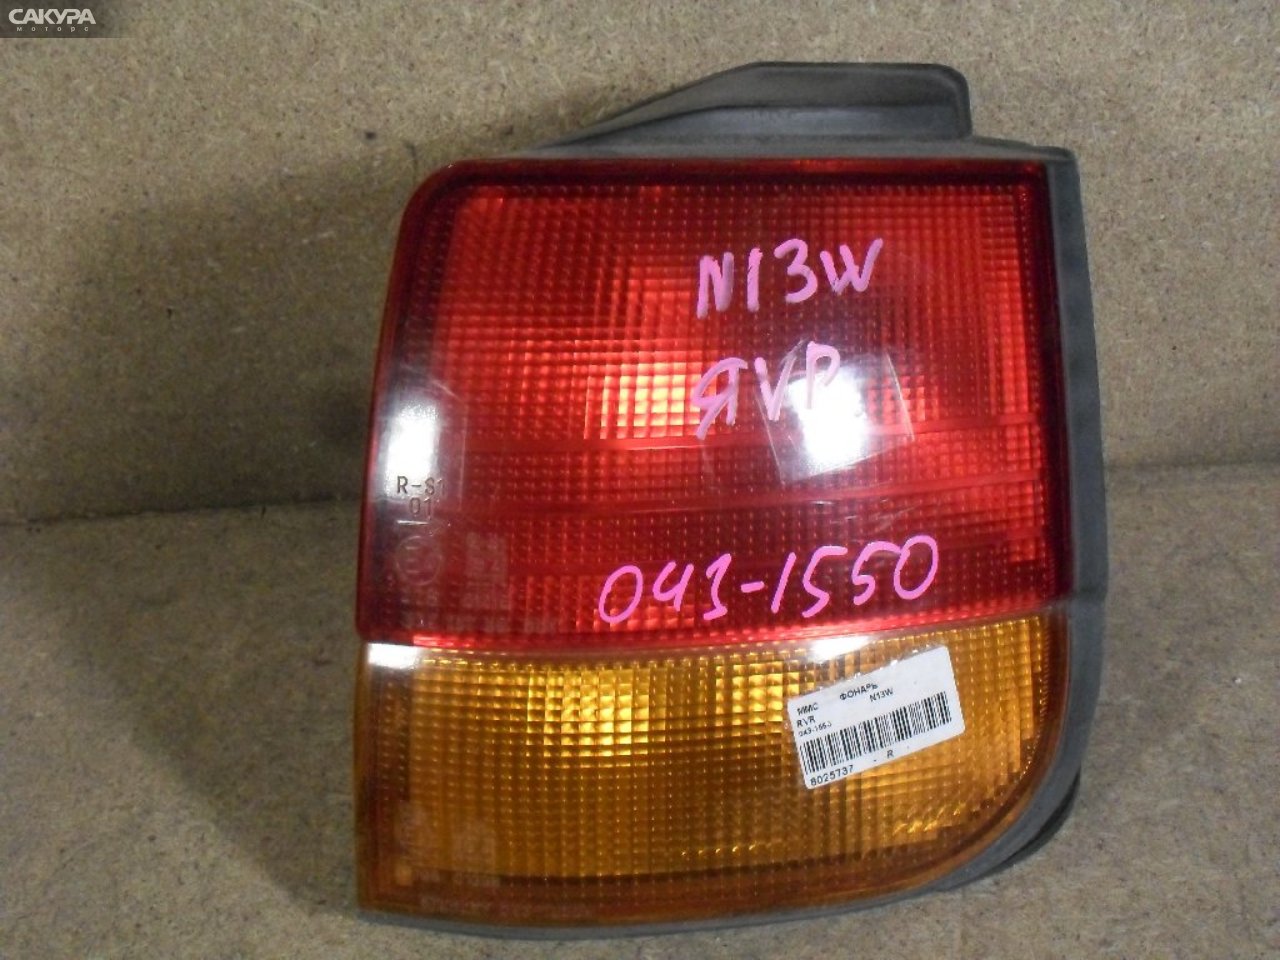 Фонарь стоп-сигнала правый Mitsubishi RVR N13W 043-1550: купить в Сакура Абакан.